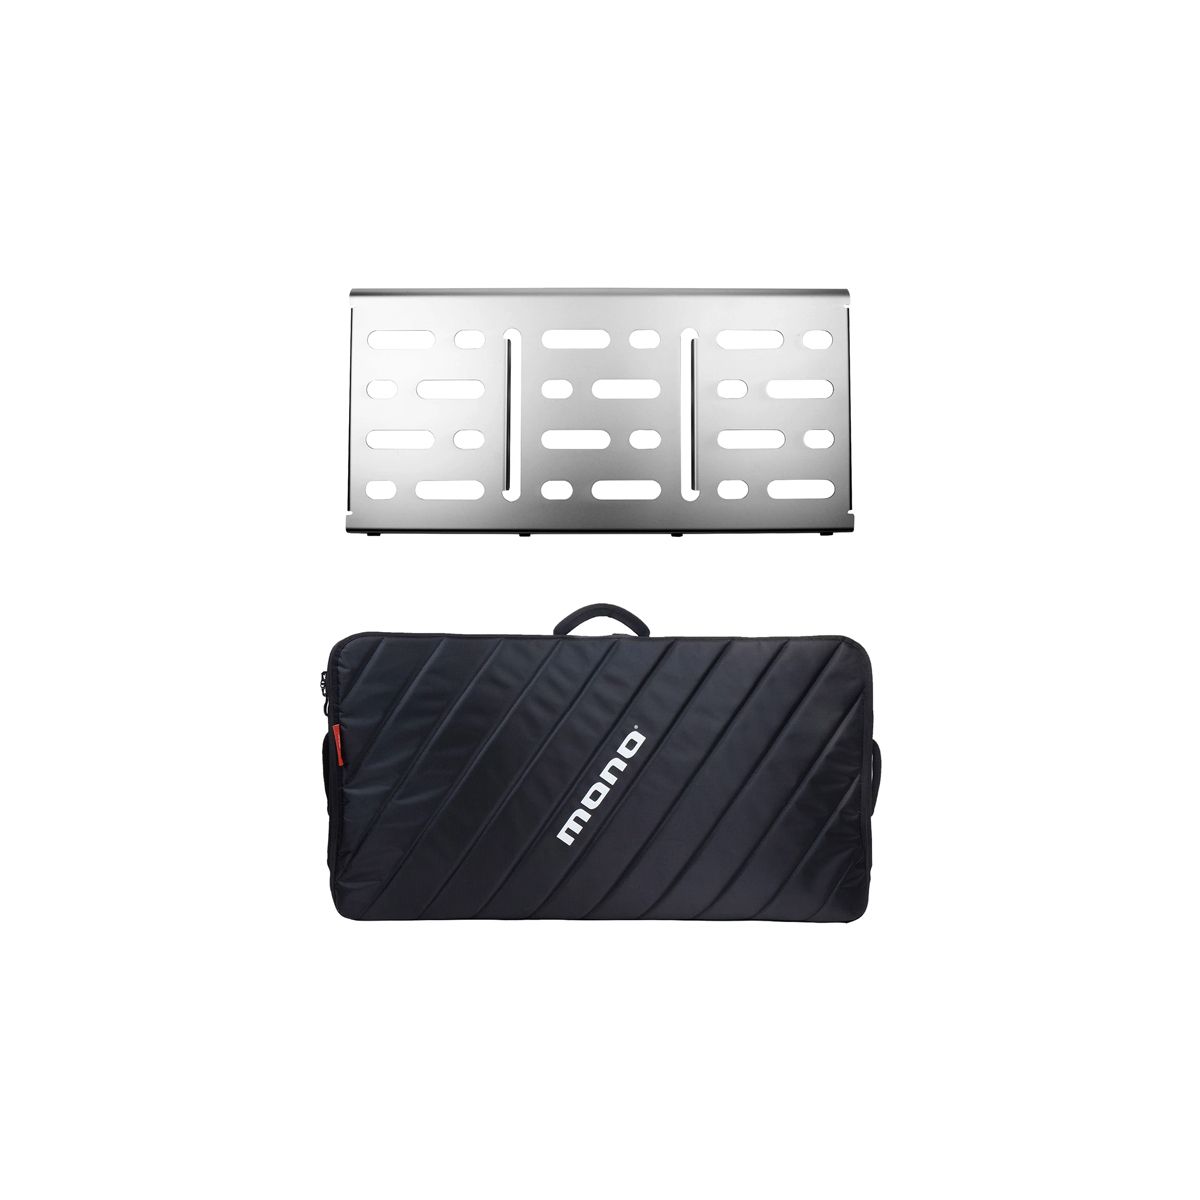 NEW Mono Pedalboard Large (Silver) + Pro Accessory Case 2.0 (Black)